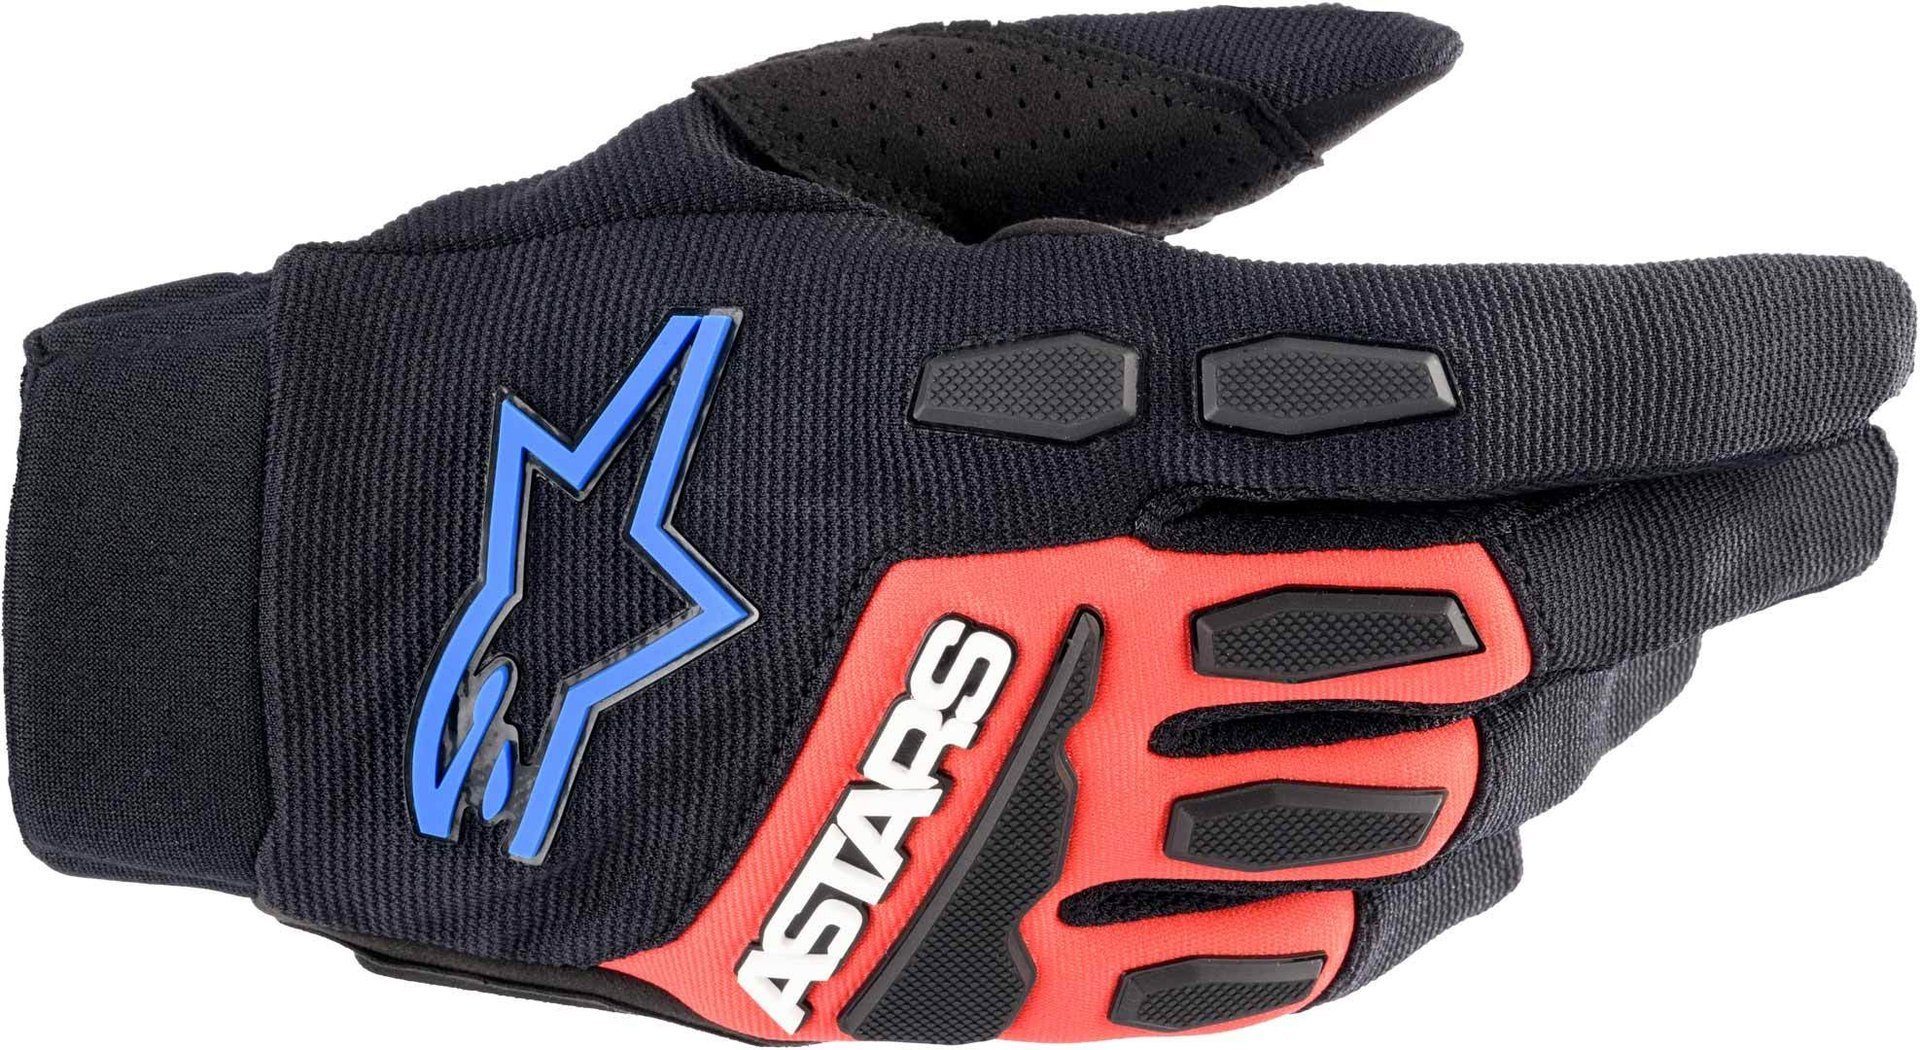 Motocross Handschuhe Black/Red/Blue Bore Full Alpinestars Motorradhandschuhe XT